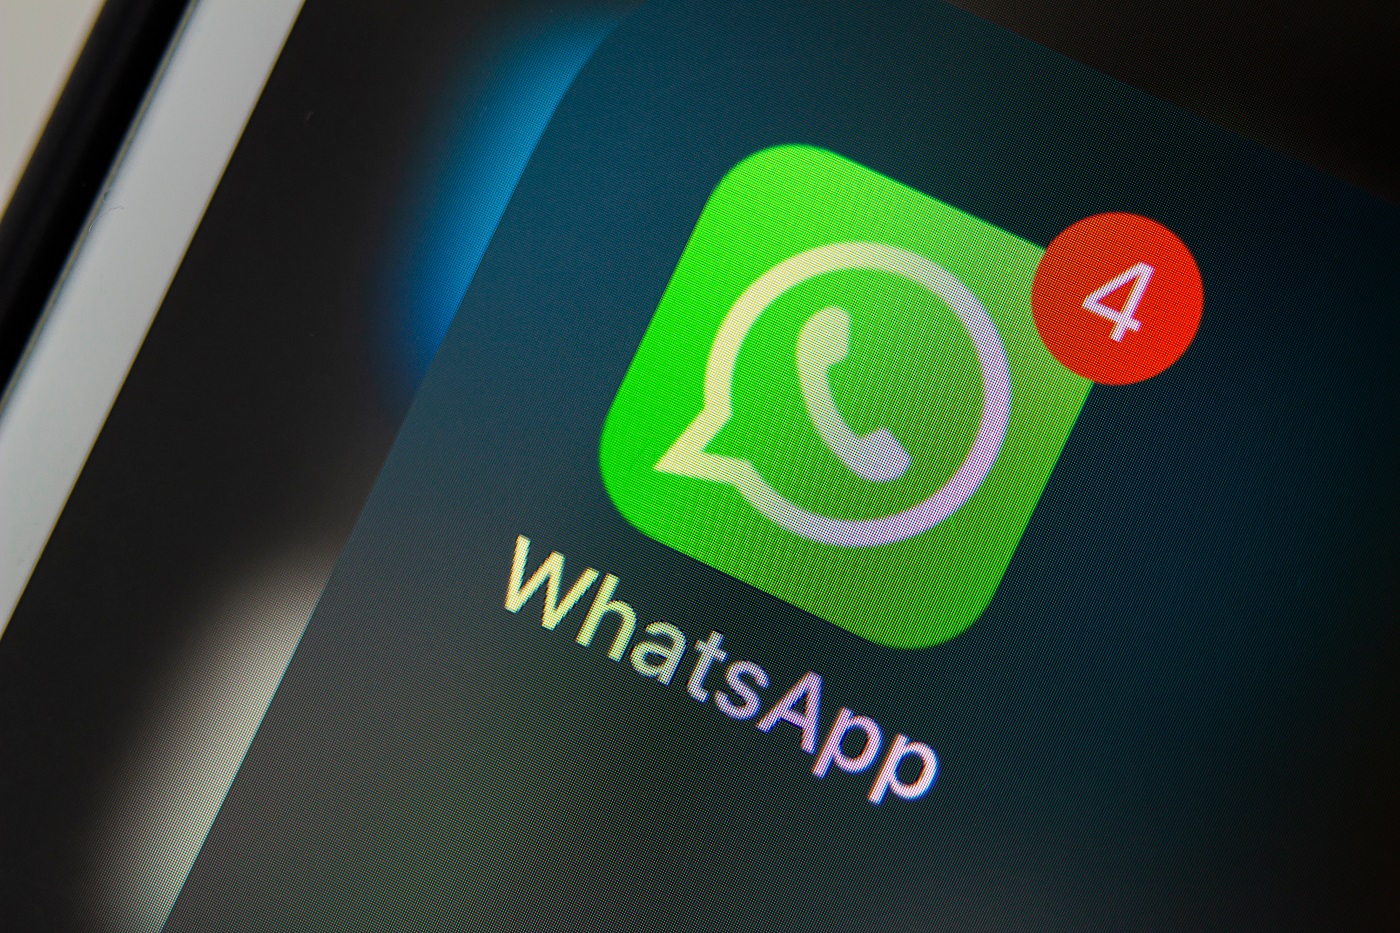 Procon-SP notifica WhatsApp, que pode ser multado em R$ 10 milhões